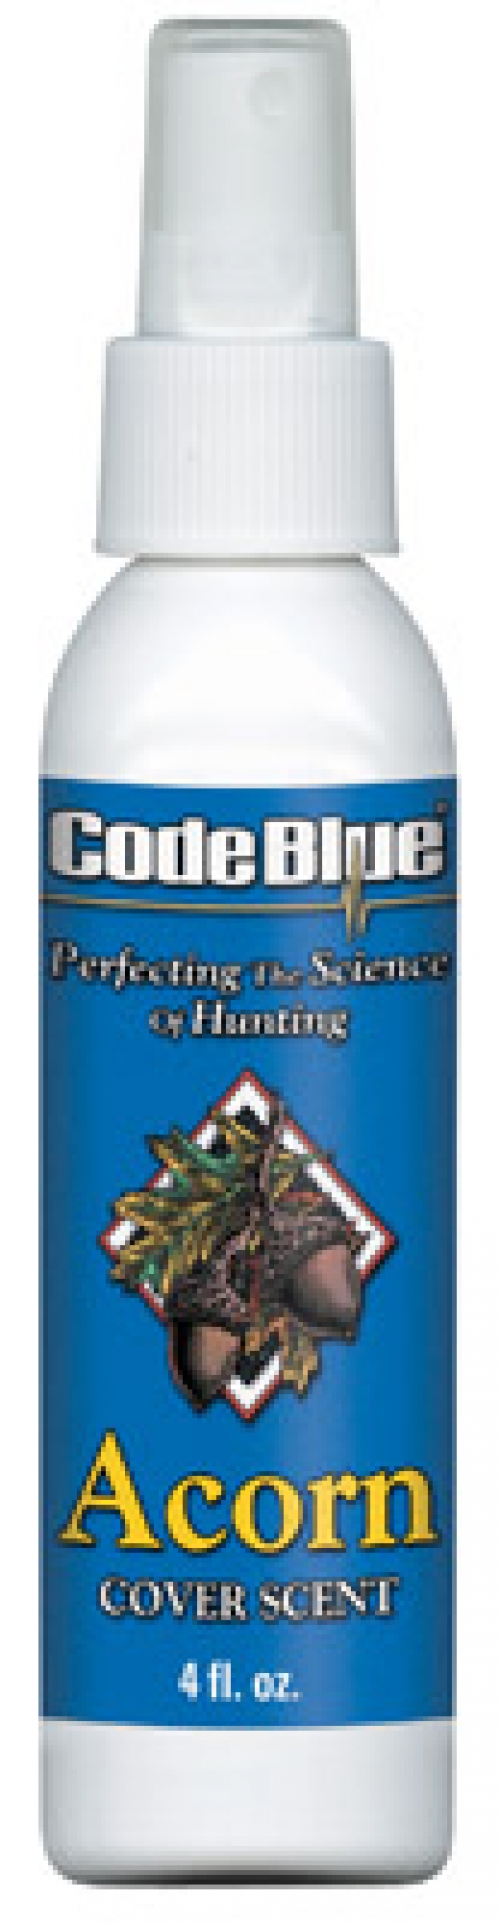 Code Blue Cover Scent White Oak Acorn 4 oz